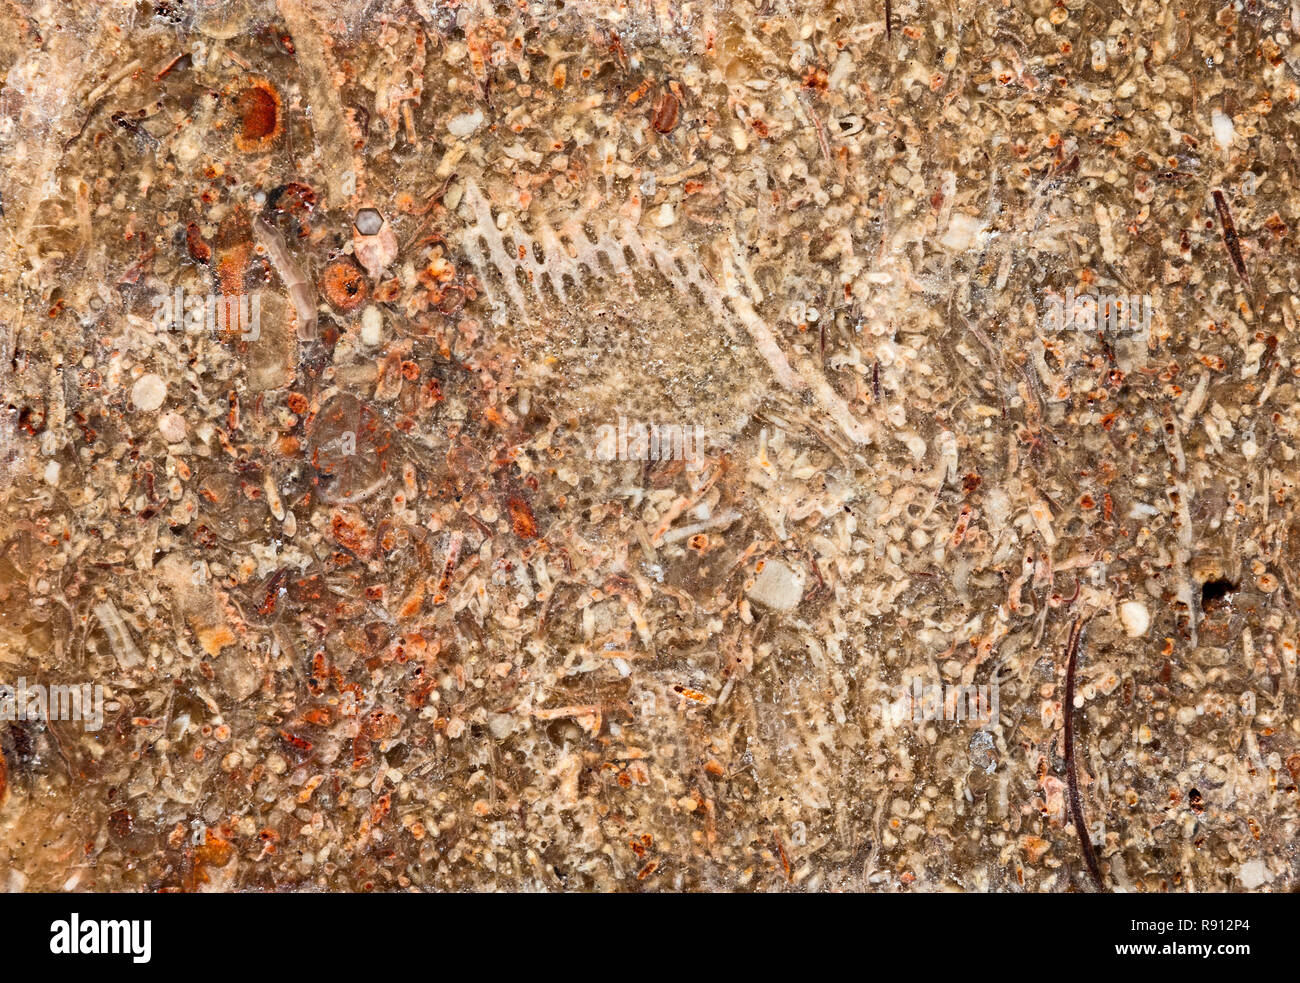 Fossile abschnitt, Kalkstein. Die Fossilien in diesen Felsen der makroskopischen und mikroskopischen Größe sein können. Stockfoto